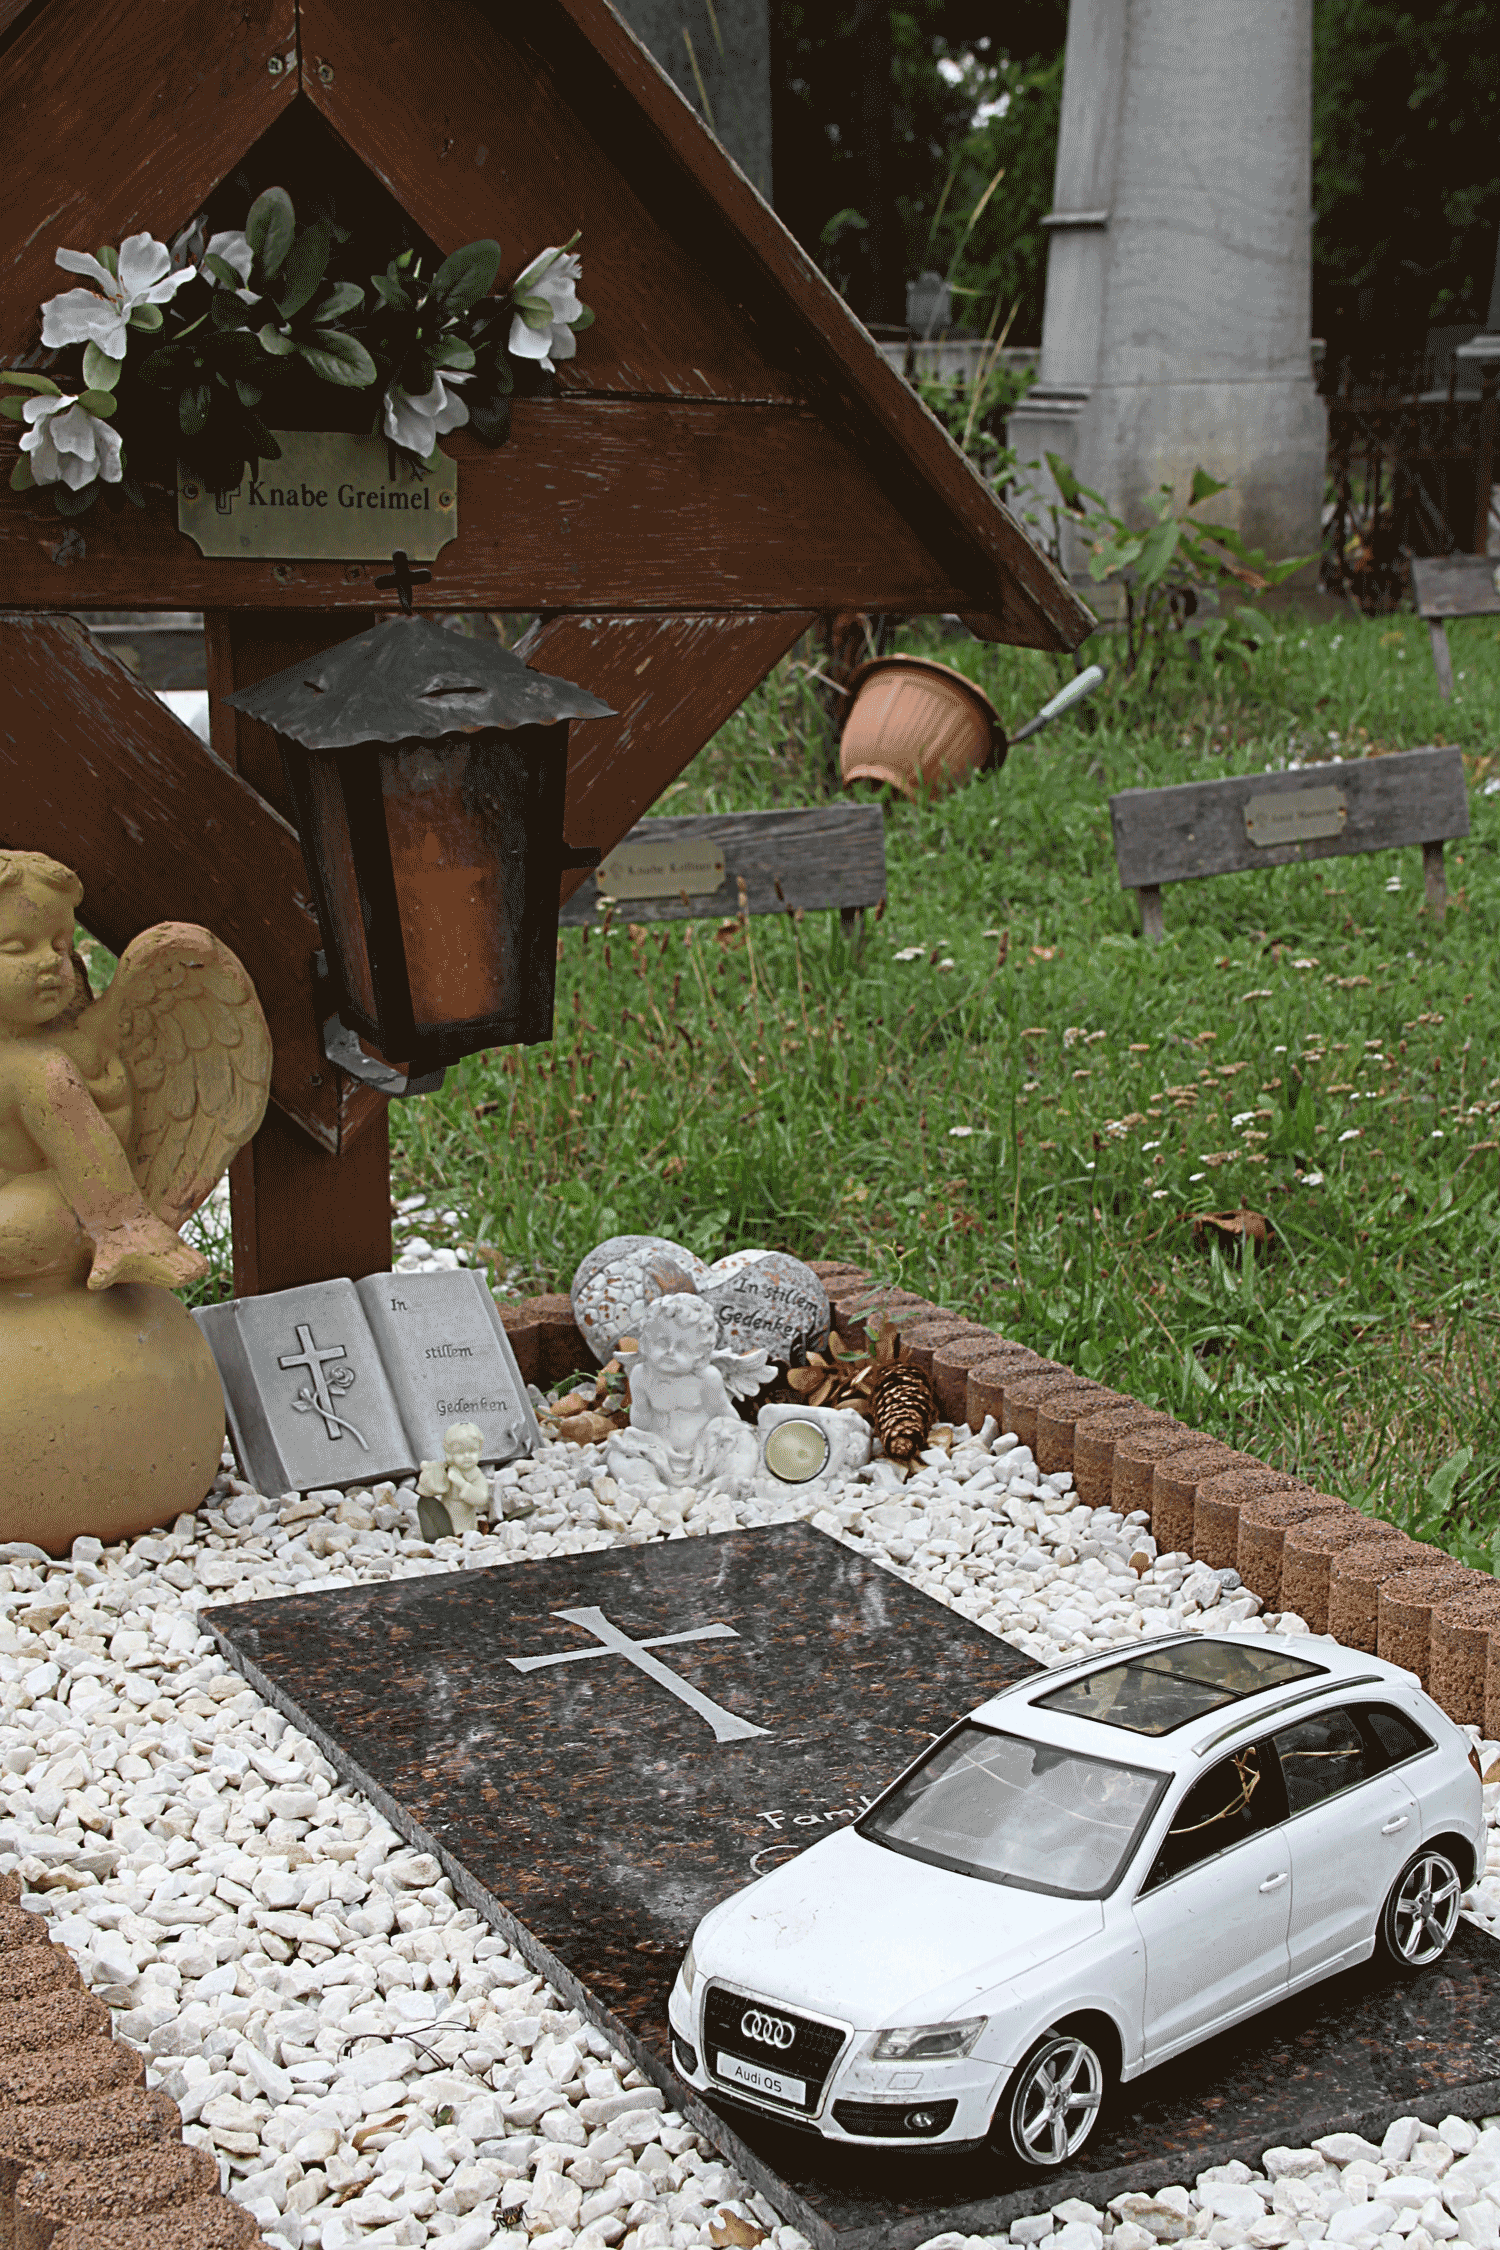 Knaben-Grab (Boy-grave) with car in Vienna